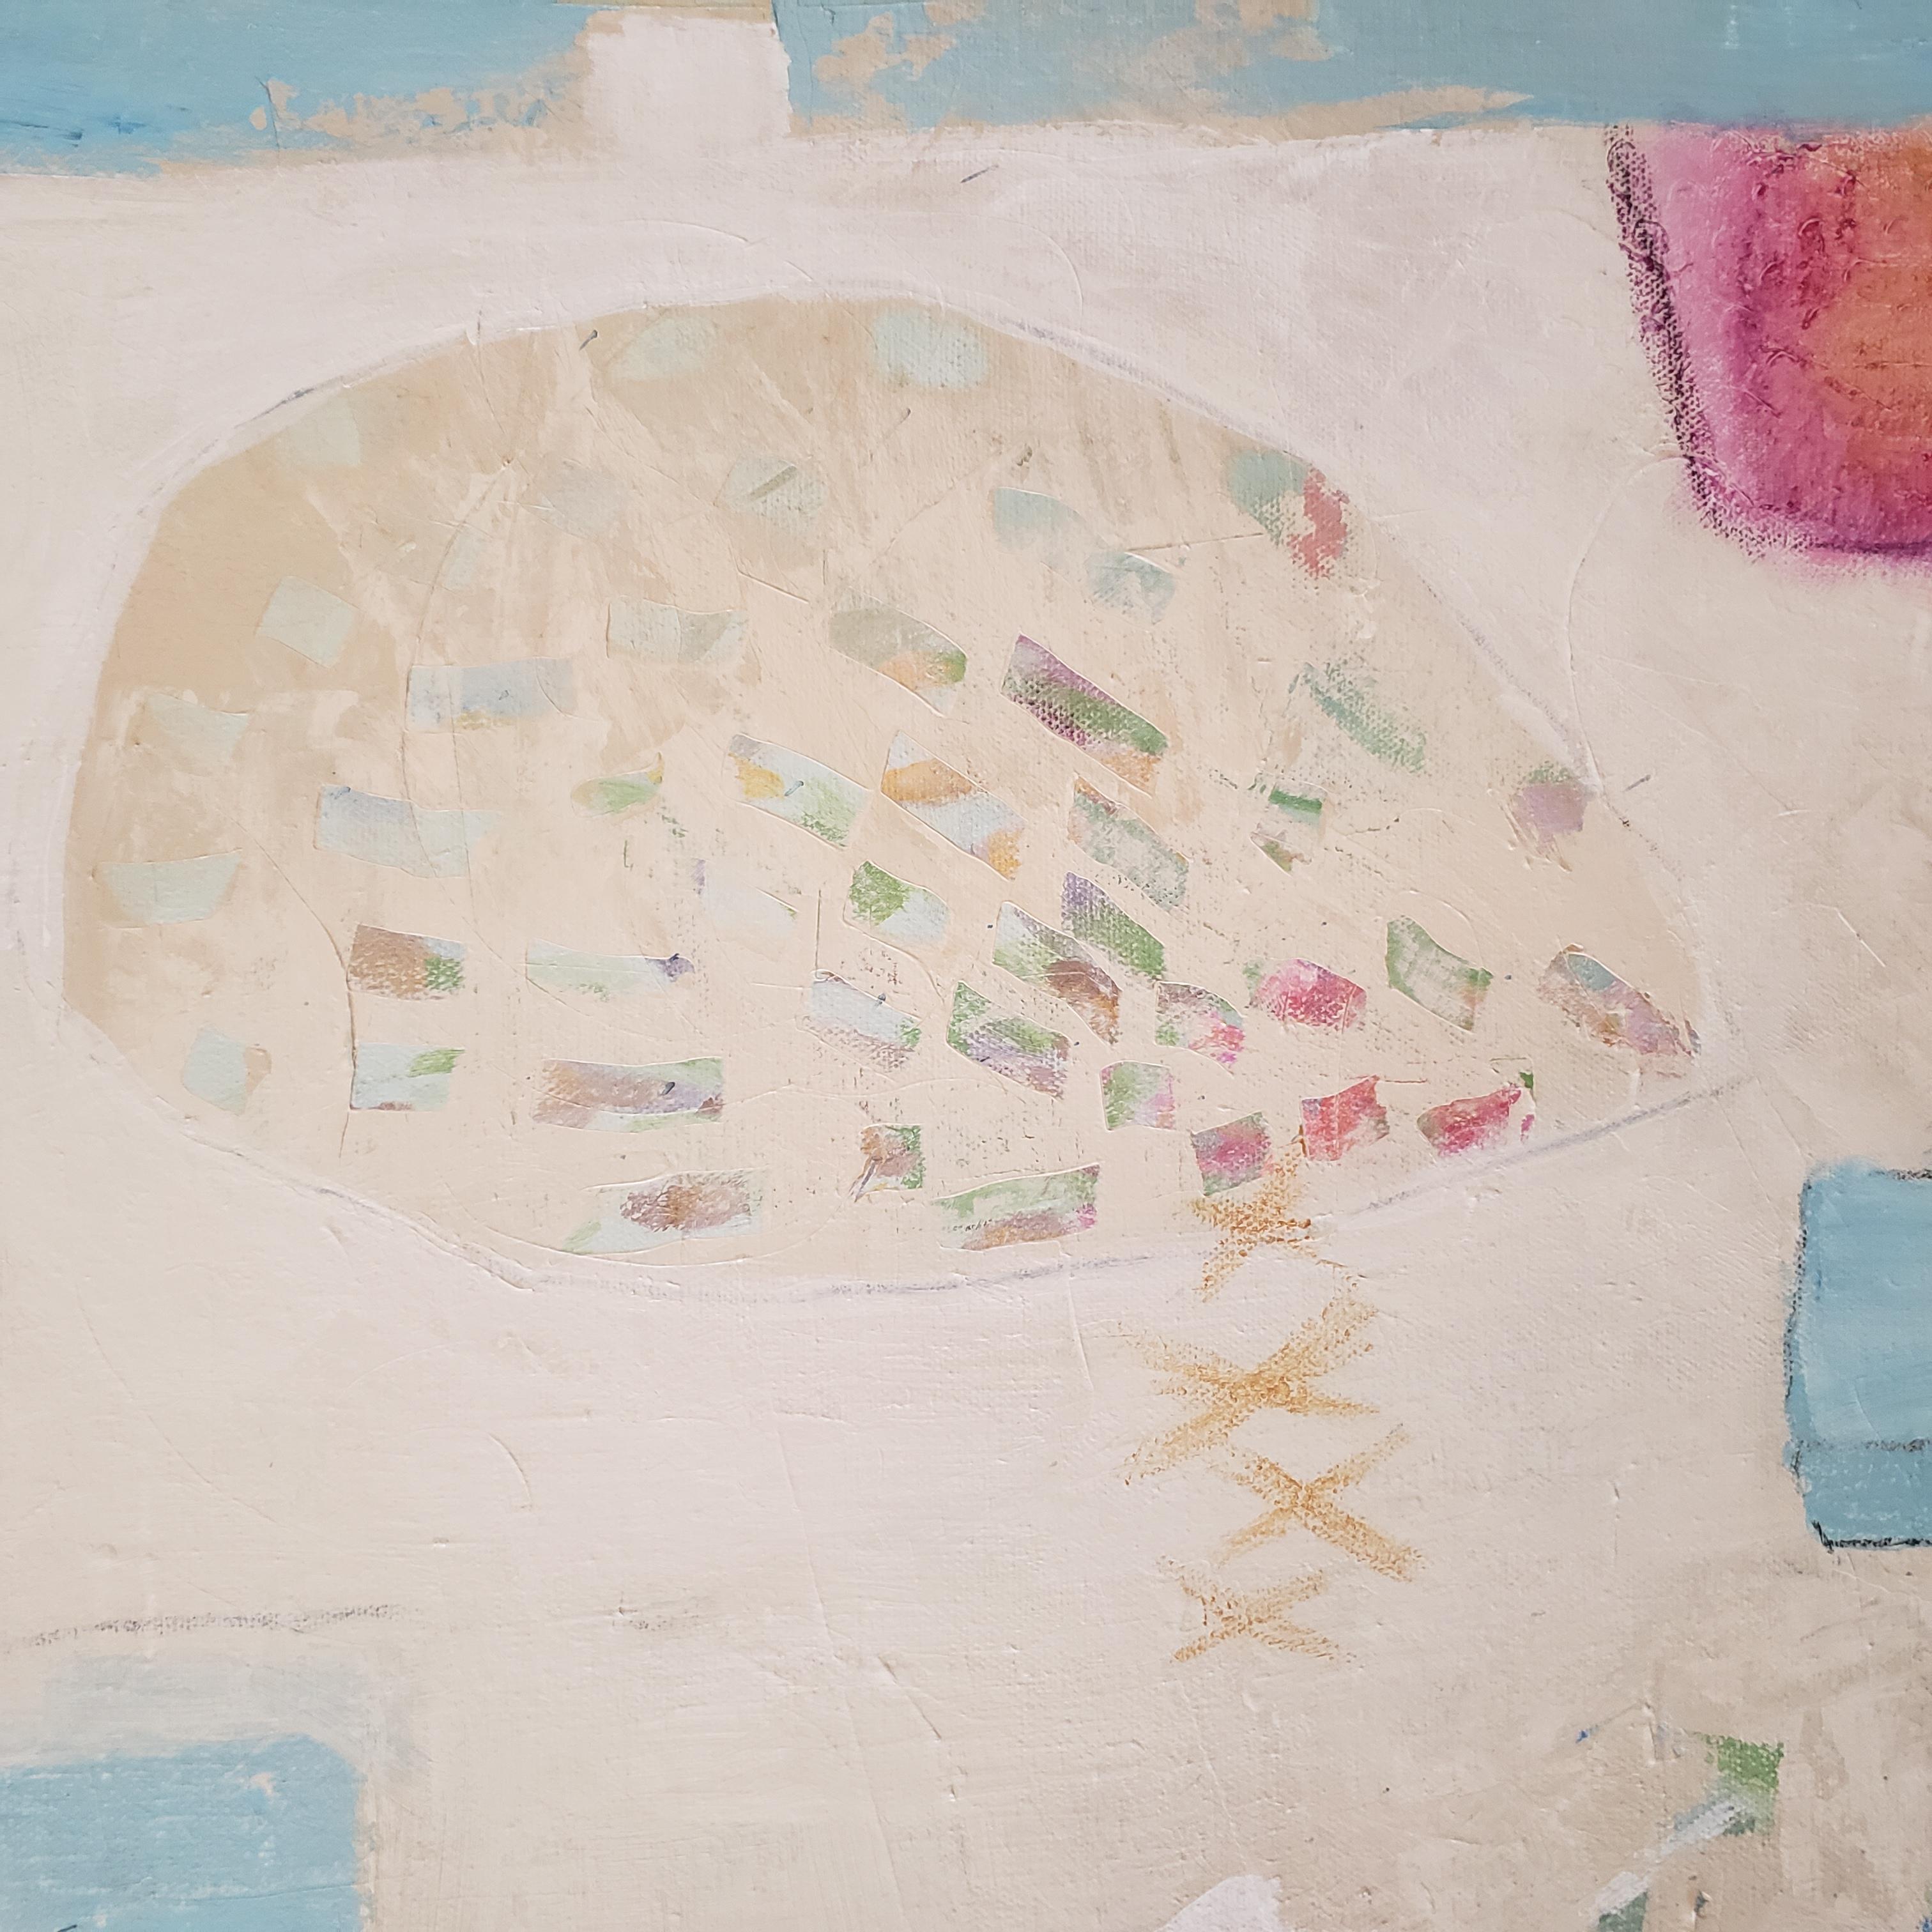  Random Thoughts ist ein zeitgenössisches abstraktes Gemälde der texanischen Künstlerin Eleanor McCarthy.  Eleanor McCarthy verwendet Acrylfarben und Buntstifte, um die beruhigenden Farben ihrer neuen zeitgenössischen Gemälde zu erzeugen, die erst